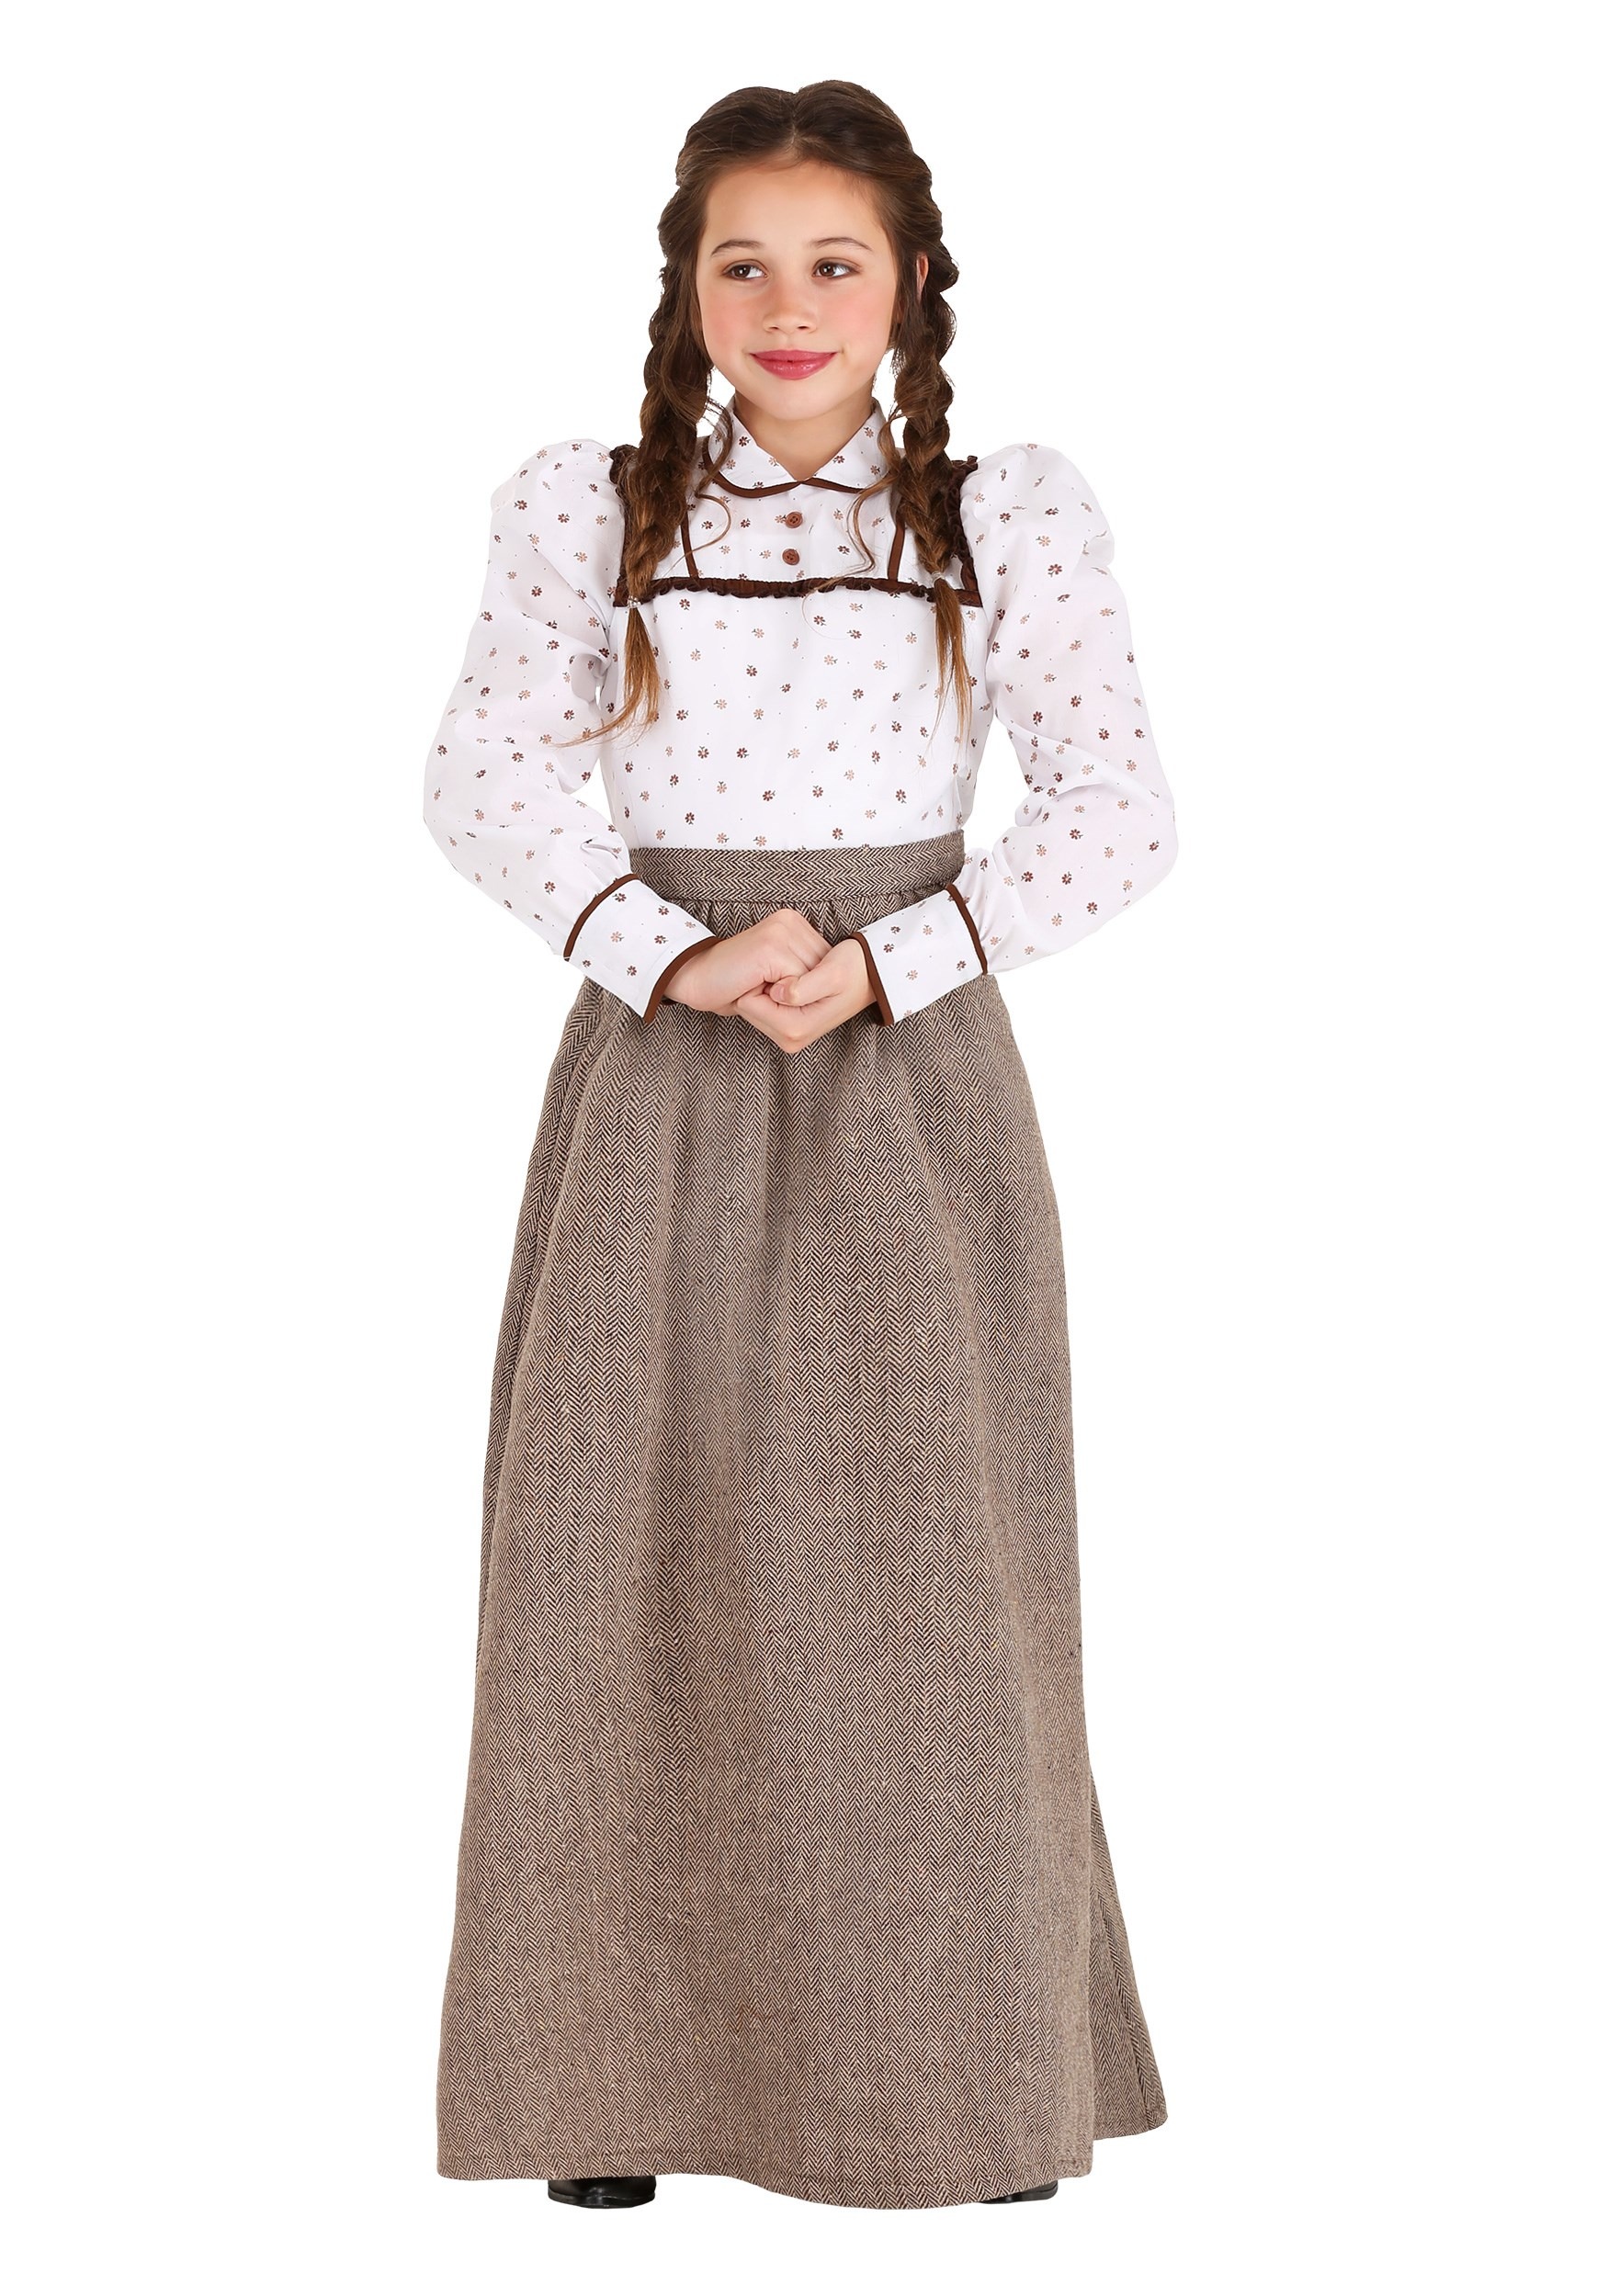 Girls Westward Pioneer Costume